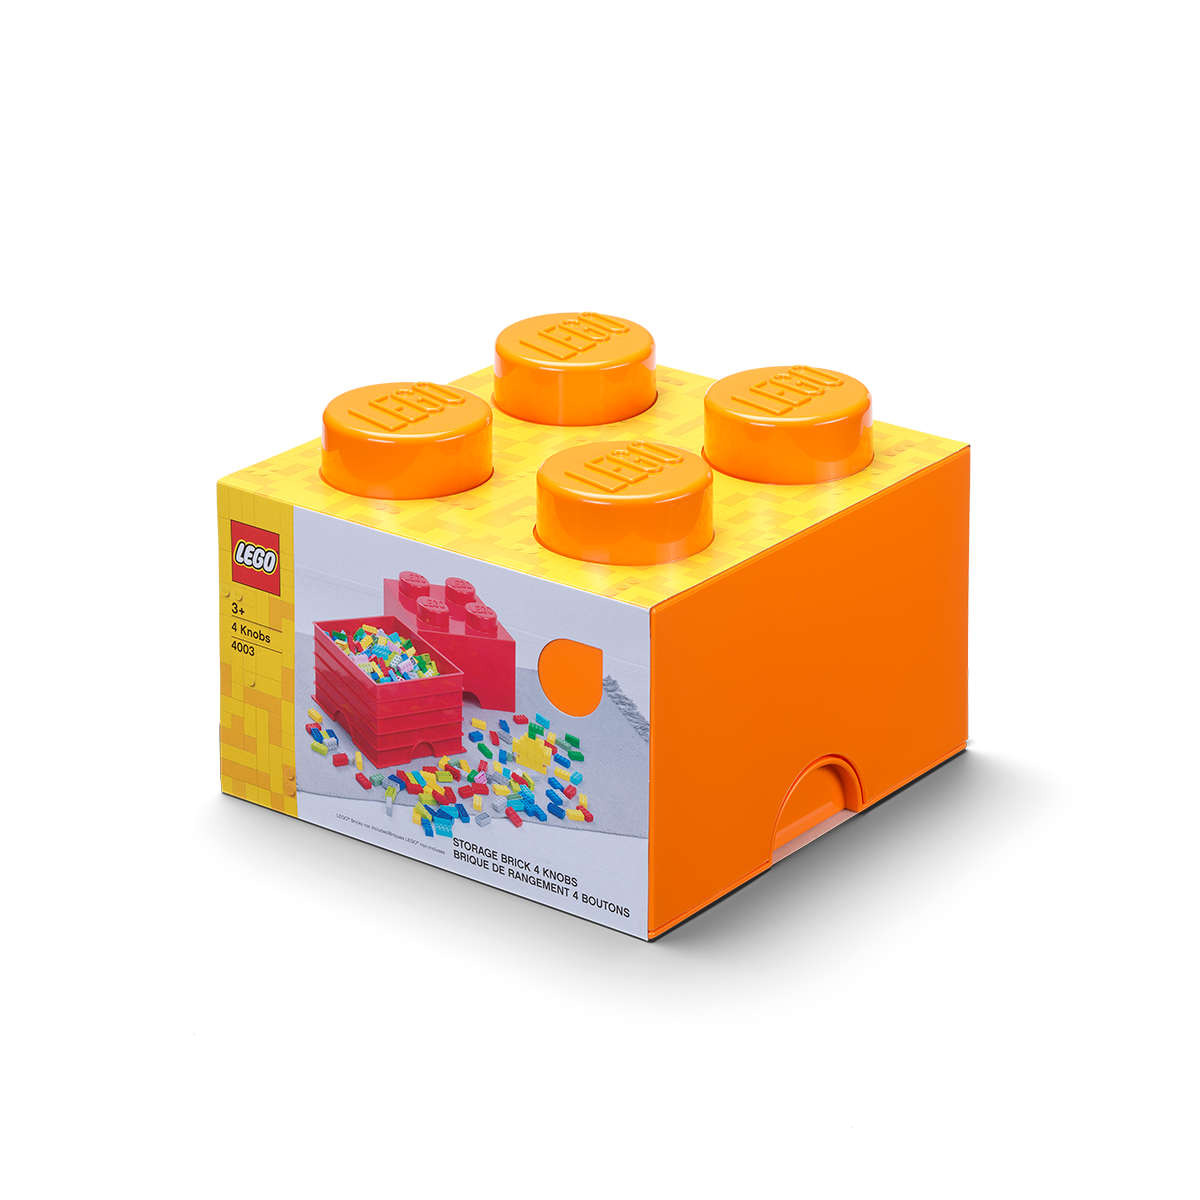 Kutija 4 - narančasti